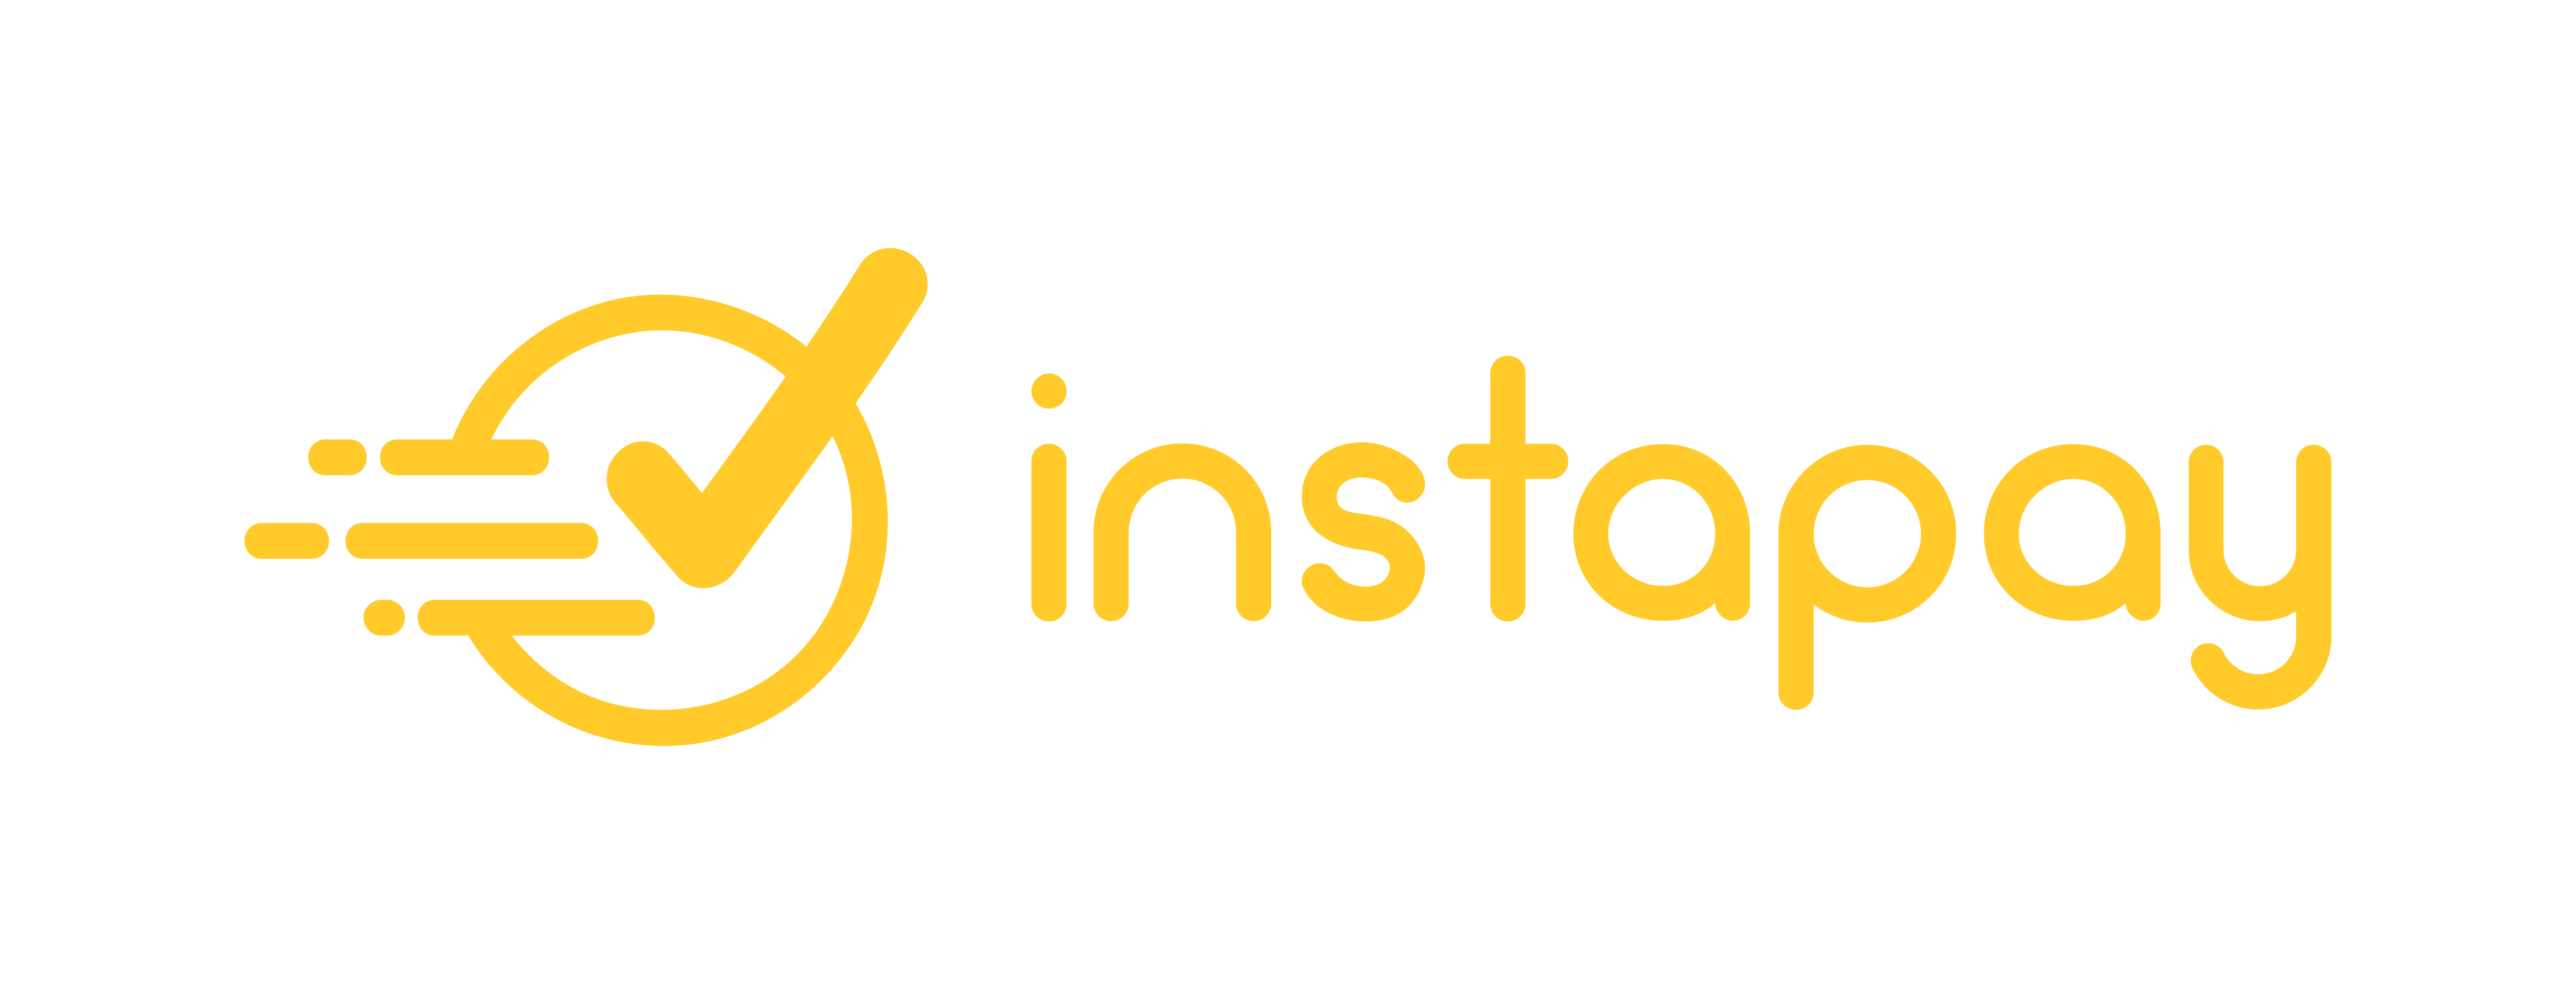 Instapay logo